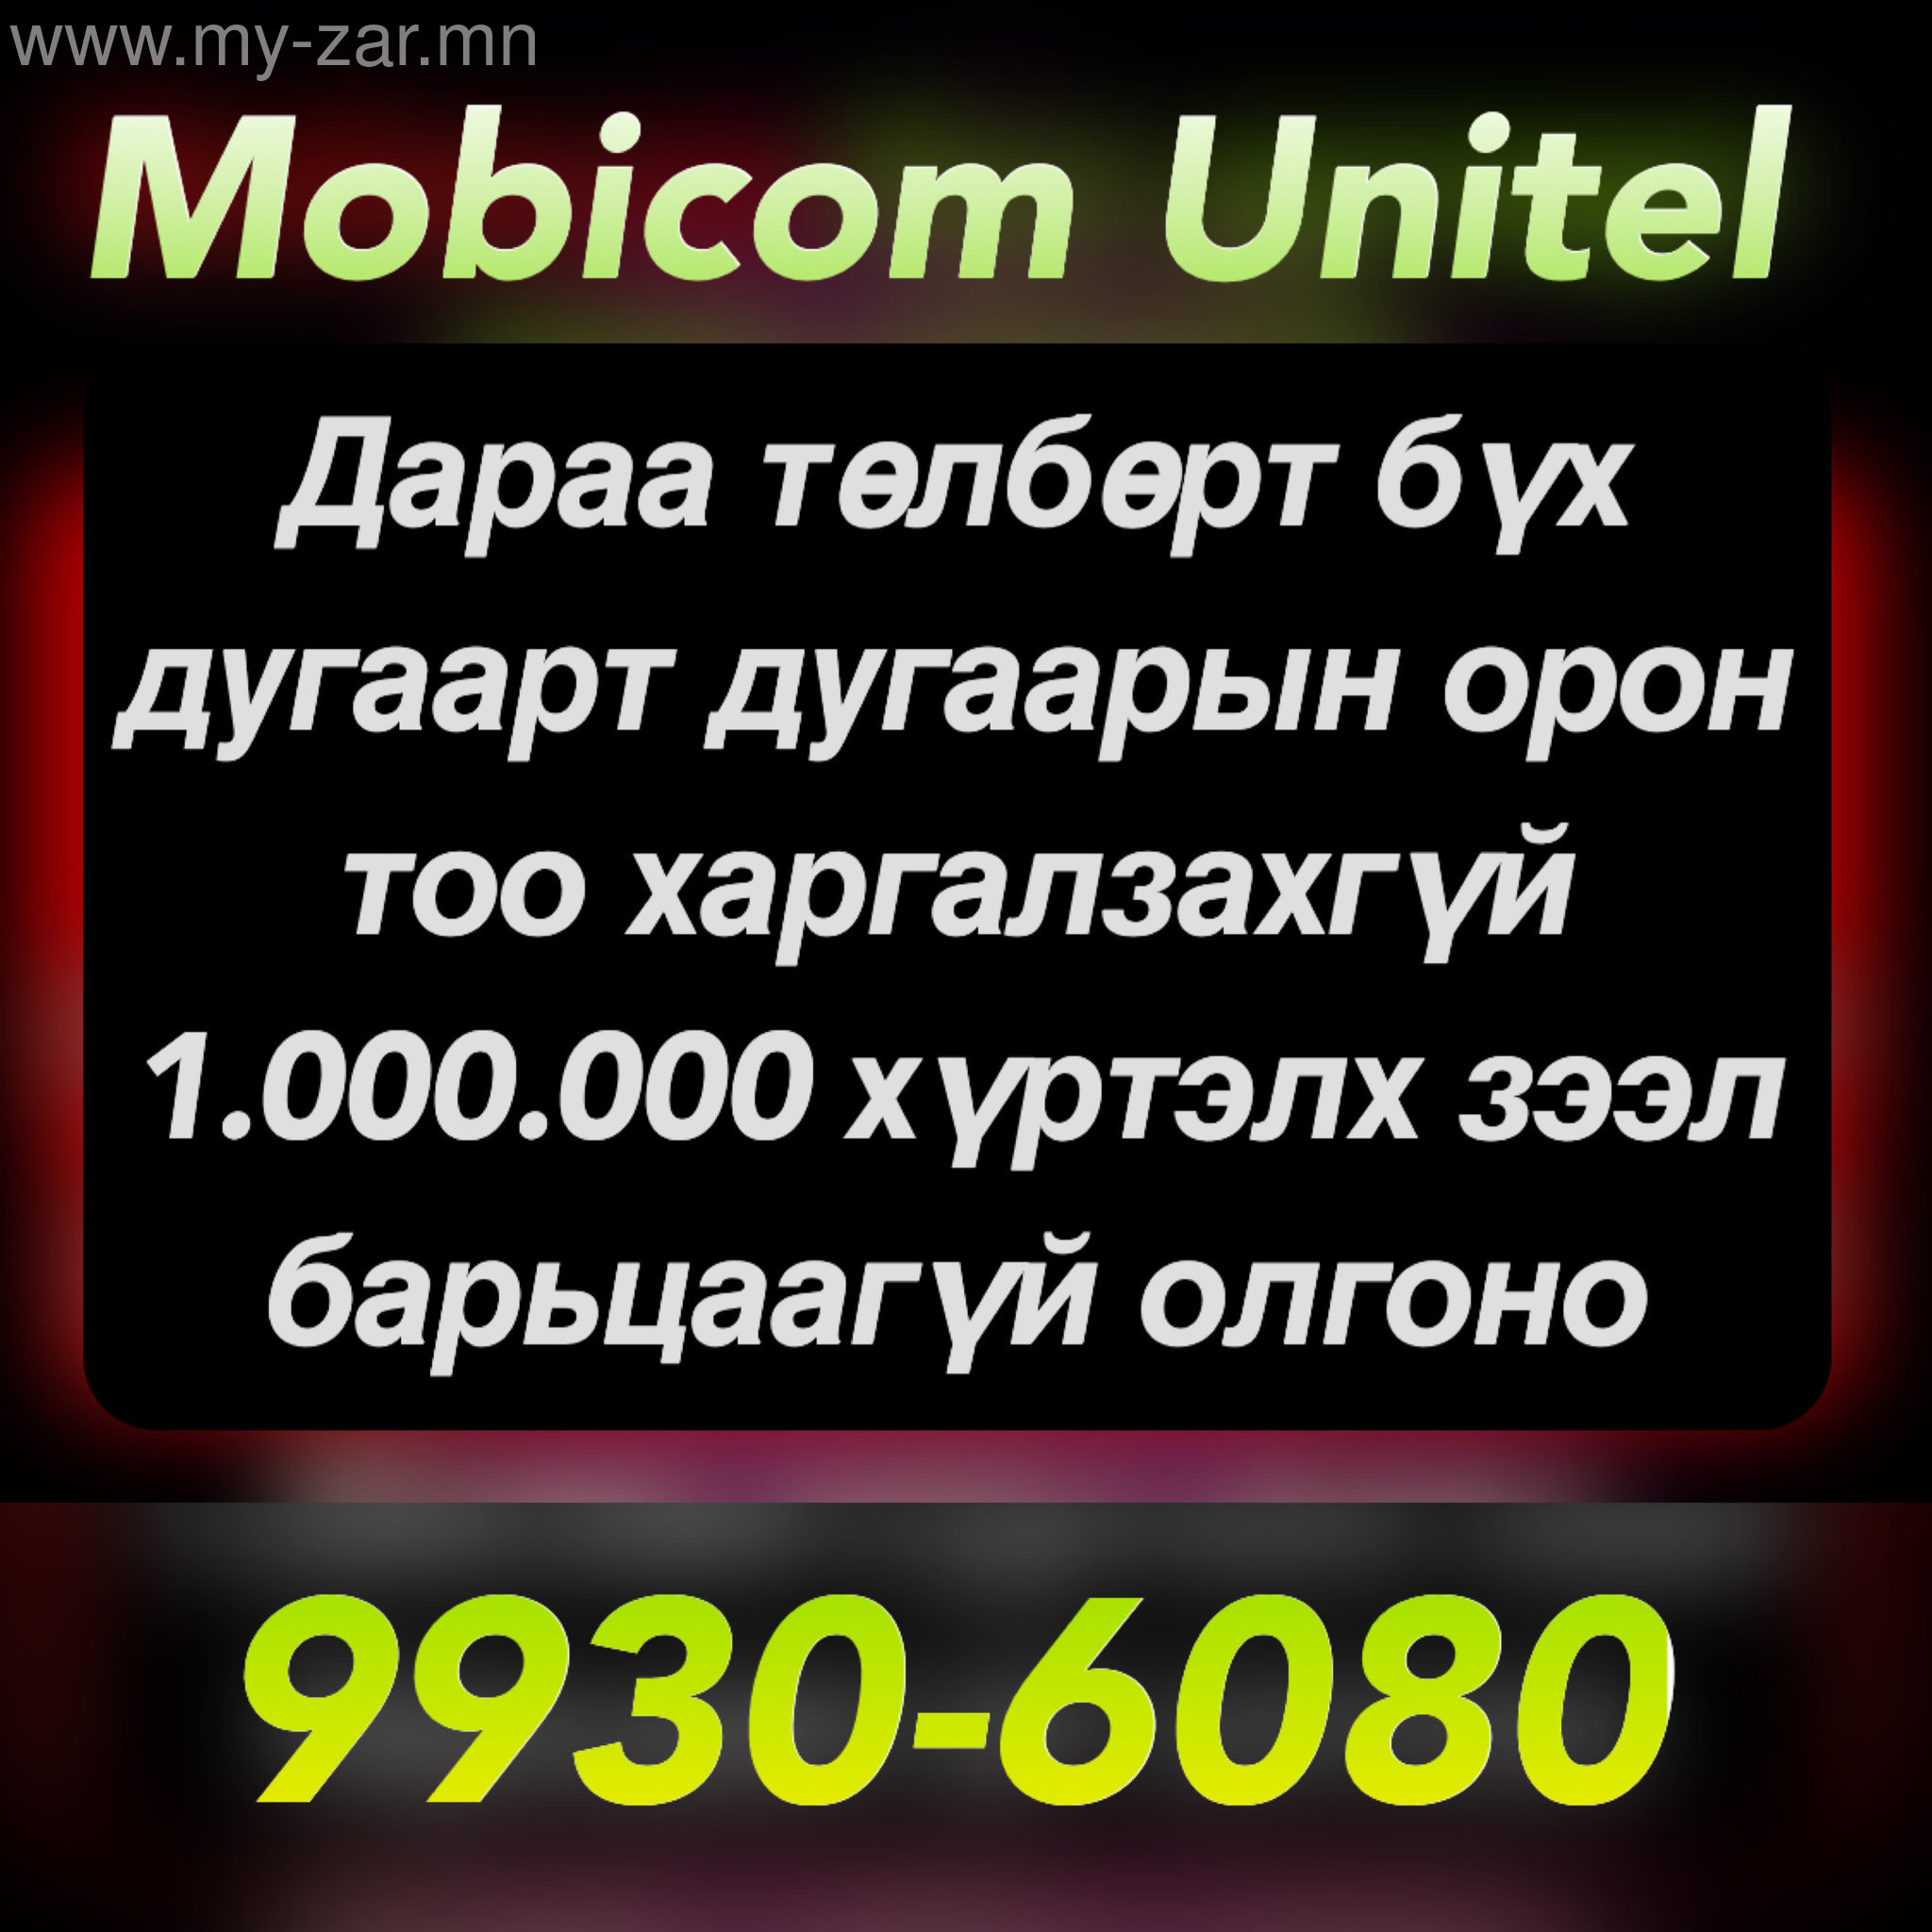 Mobicom Unitel дугаарт барьцаагүй зээл олгоно